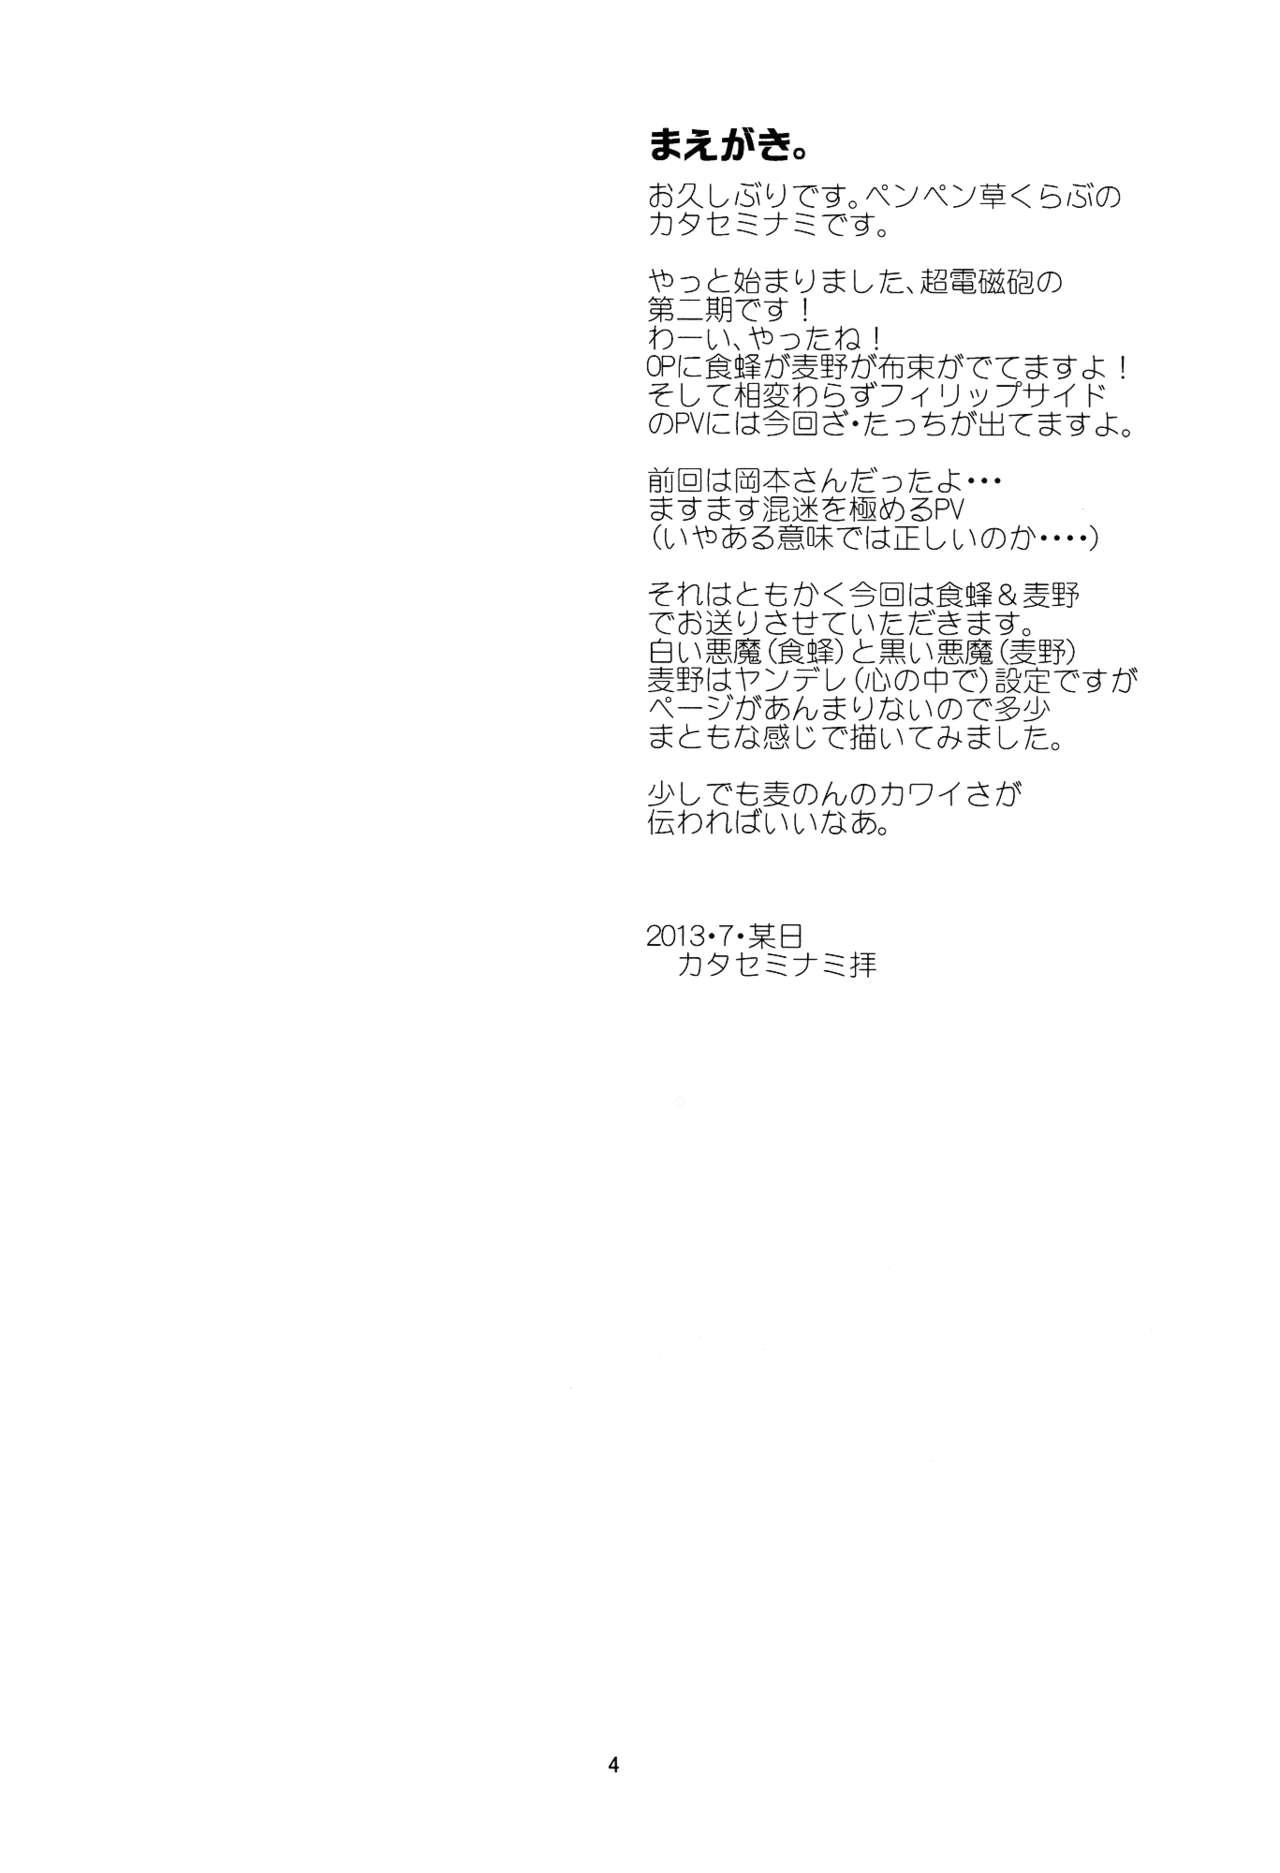 Ball Busting Manatsu no Reversible - Toaru kagaku no railgun Toaru majutsu no index Bitch - Page 4